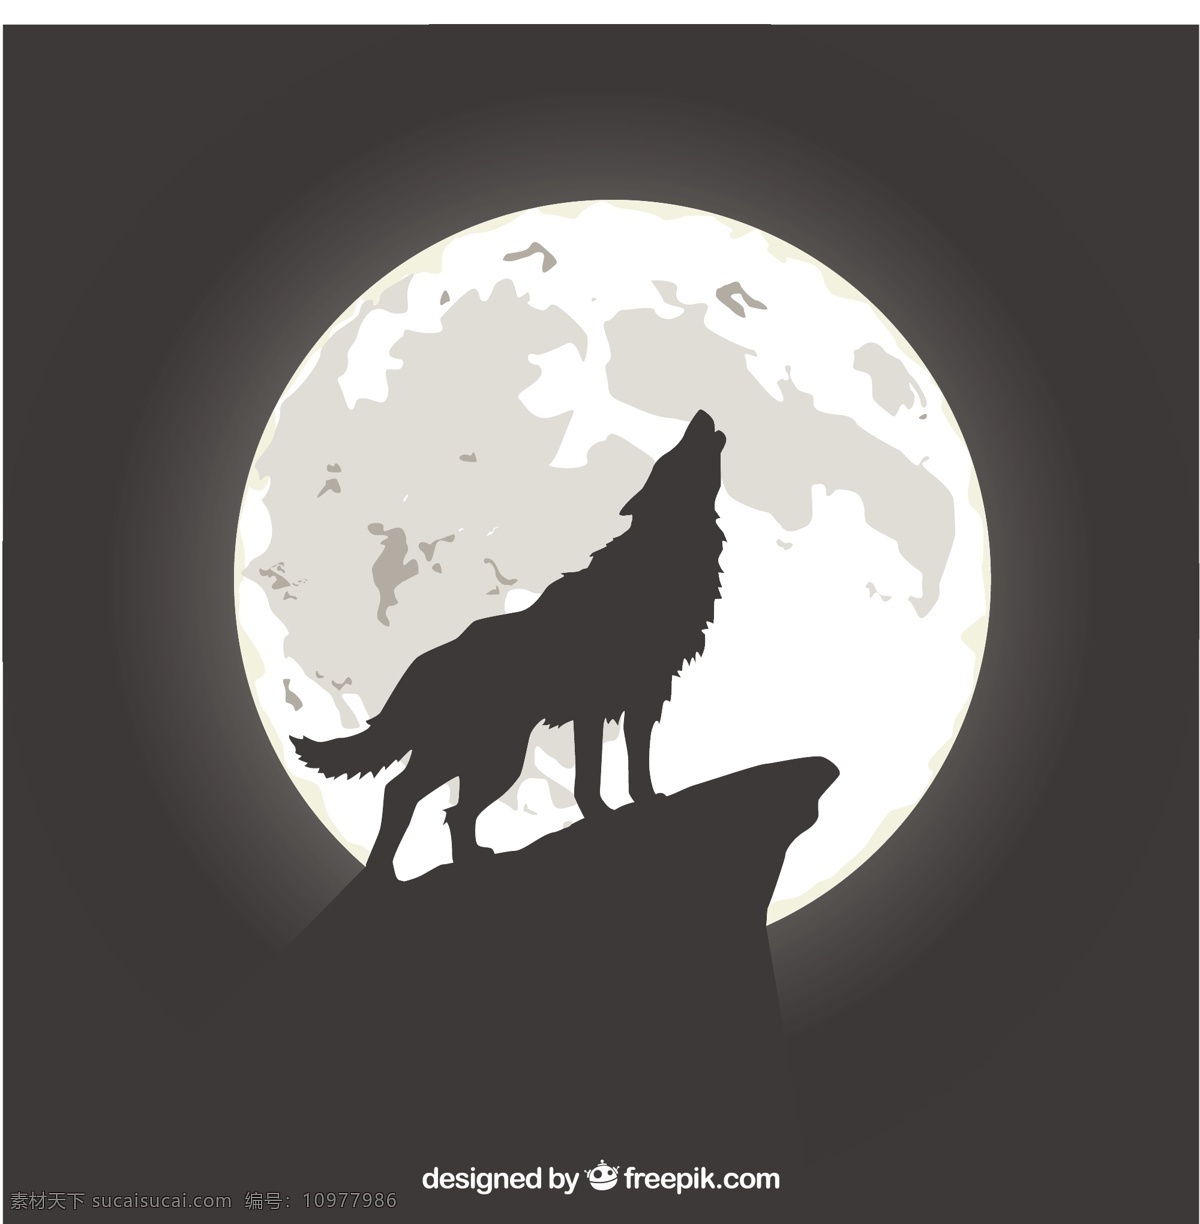 保 鲁夫 月球 上 嚎叫 背景 自然 动物 月亮 狼 自然背景 野生动物 猎人 食肉动物